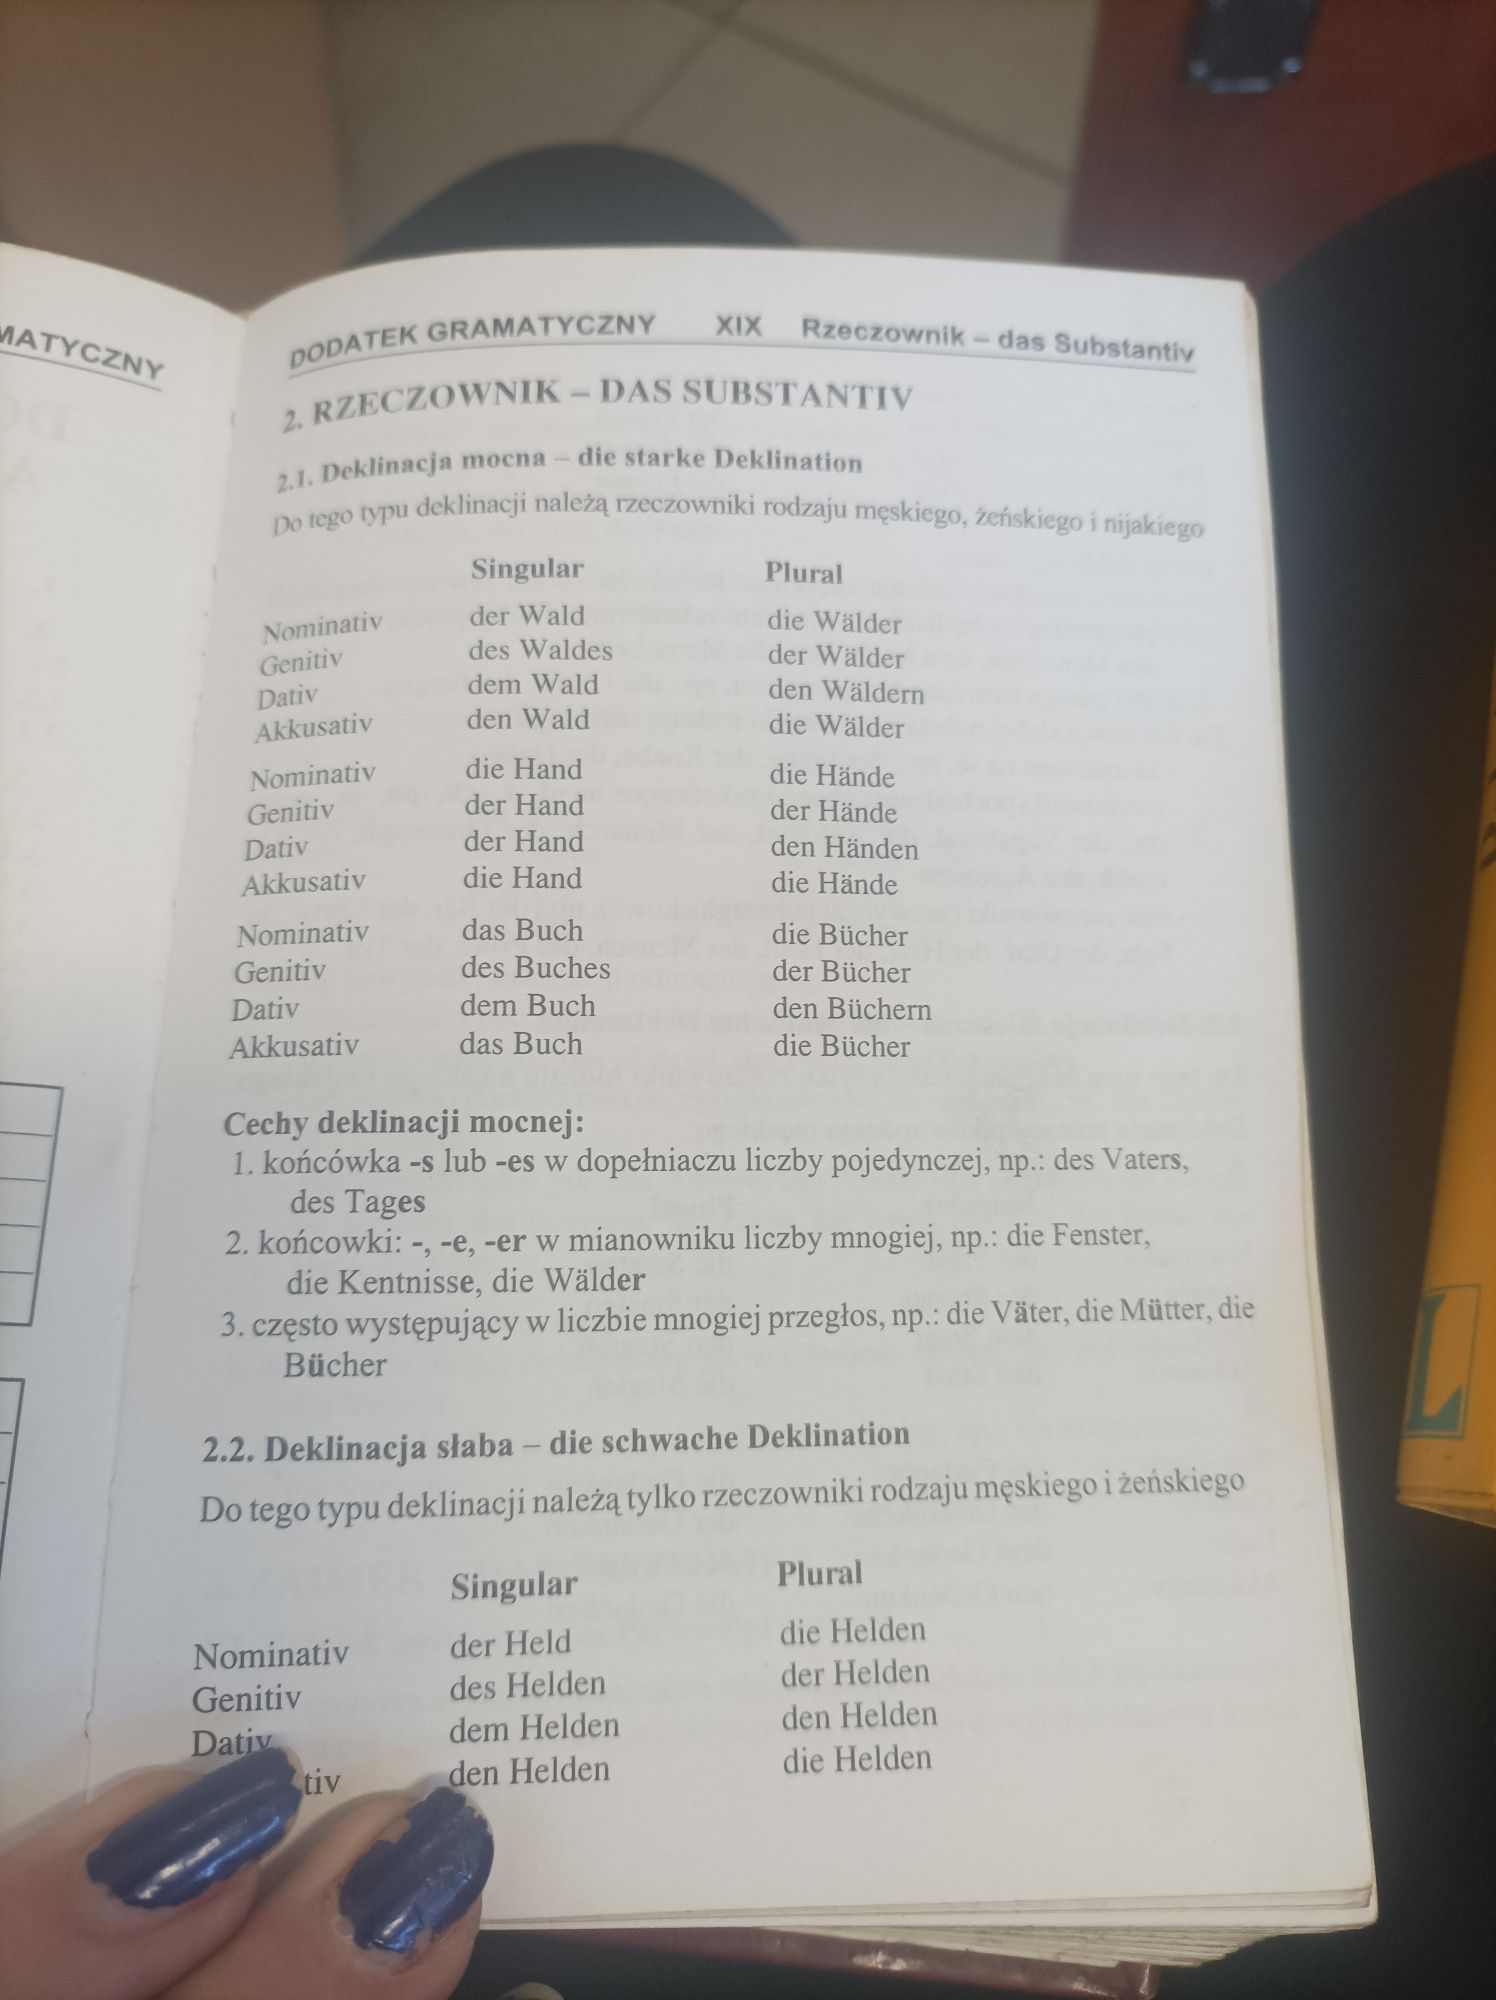 Oddam dwa słowniki polsko-niemieckie